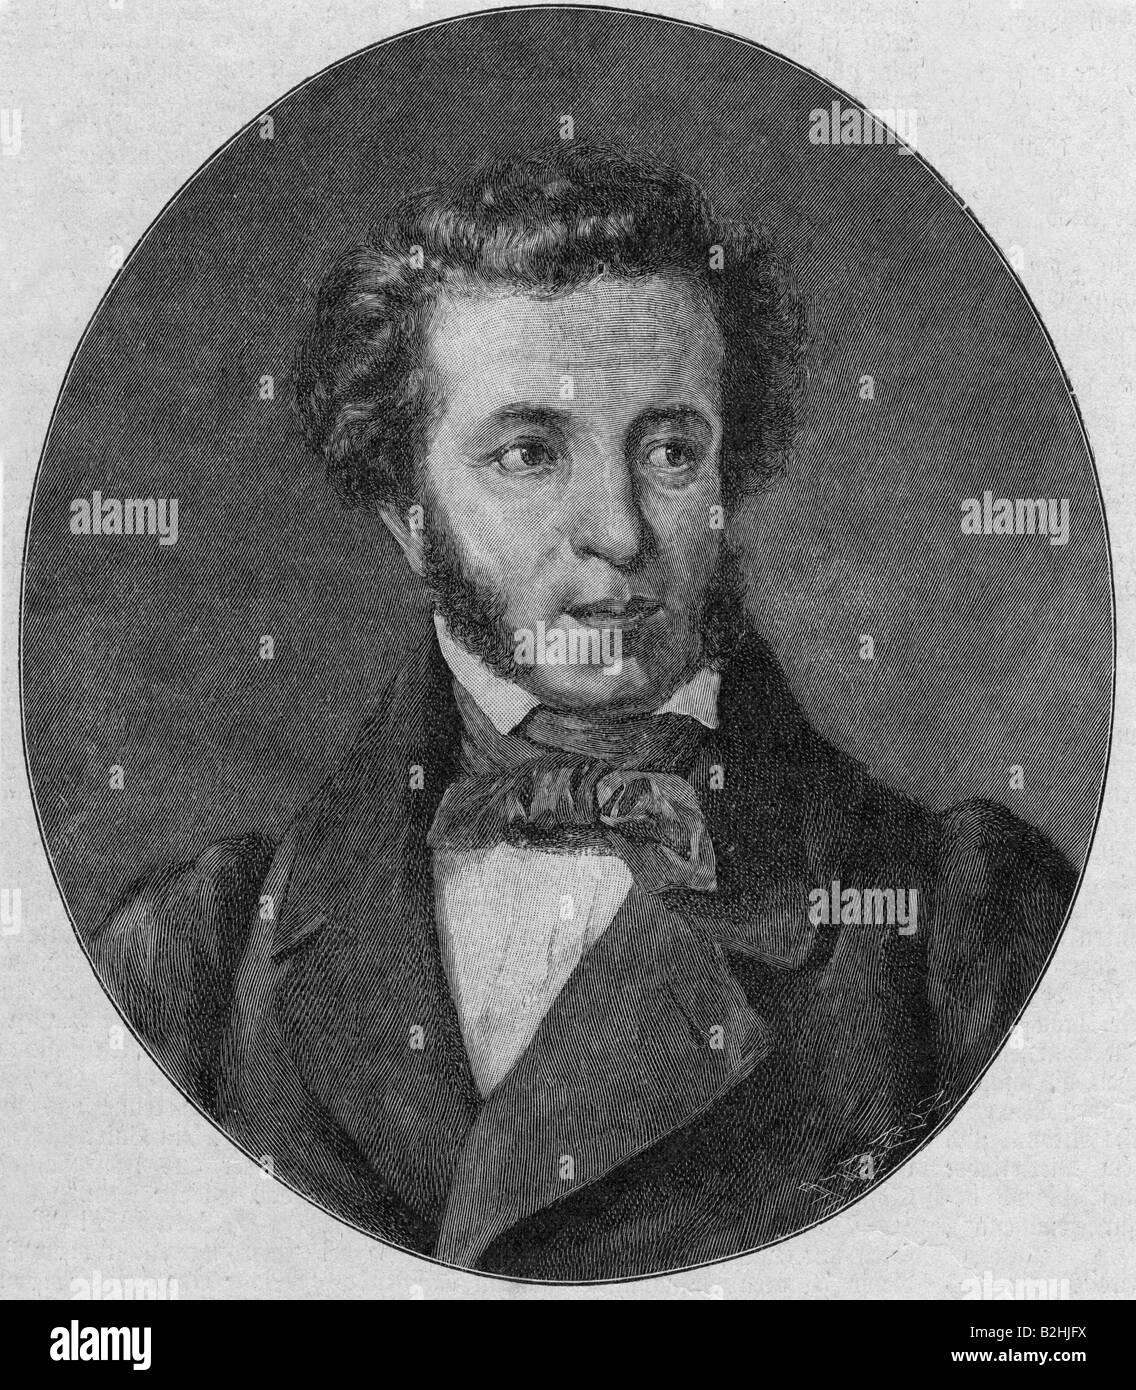 Pouchkine, Alexander Sergeyevich, 26.5.1799 - 29.1.1837, auteur/écrivain russe, portrait, gravure, XIXe siècle, , Banque D'Images